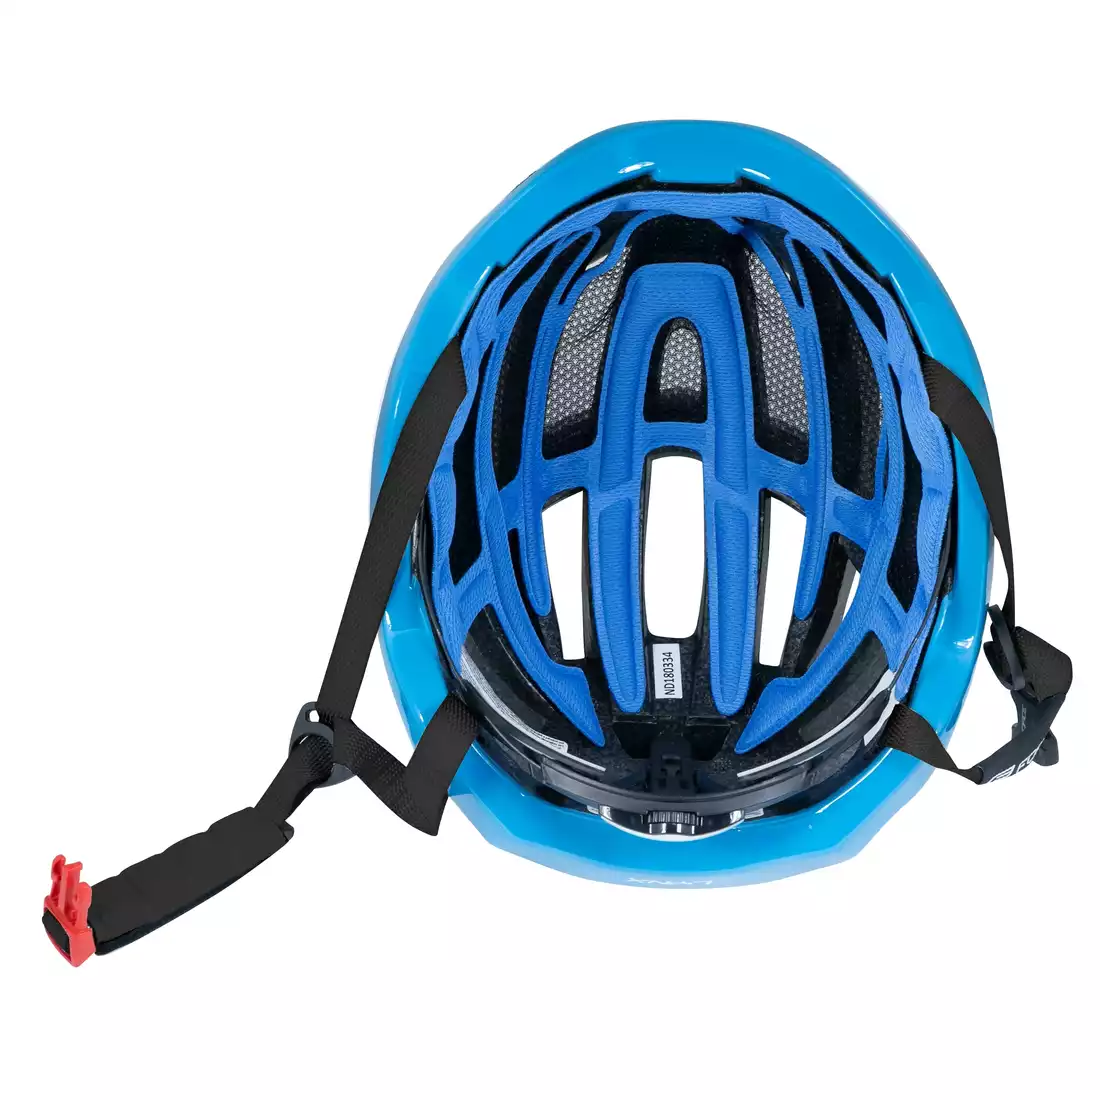 FORCE LYNX kask rowerowy czarny niebieski